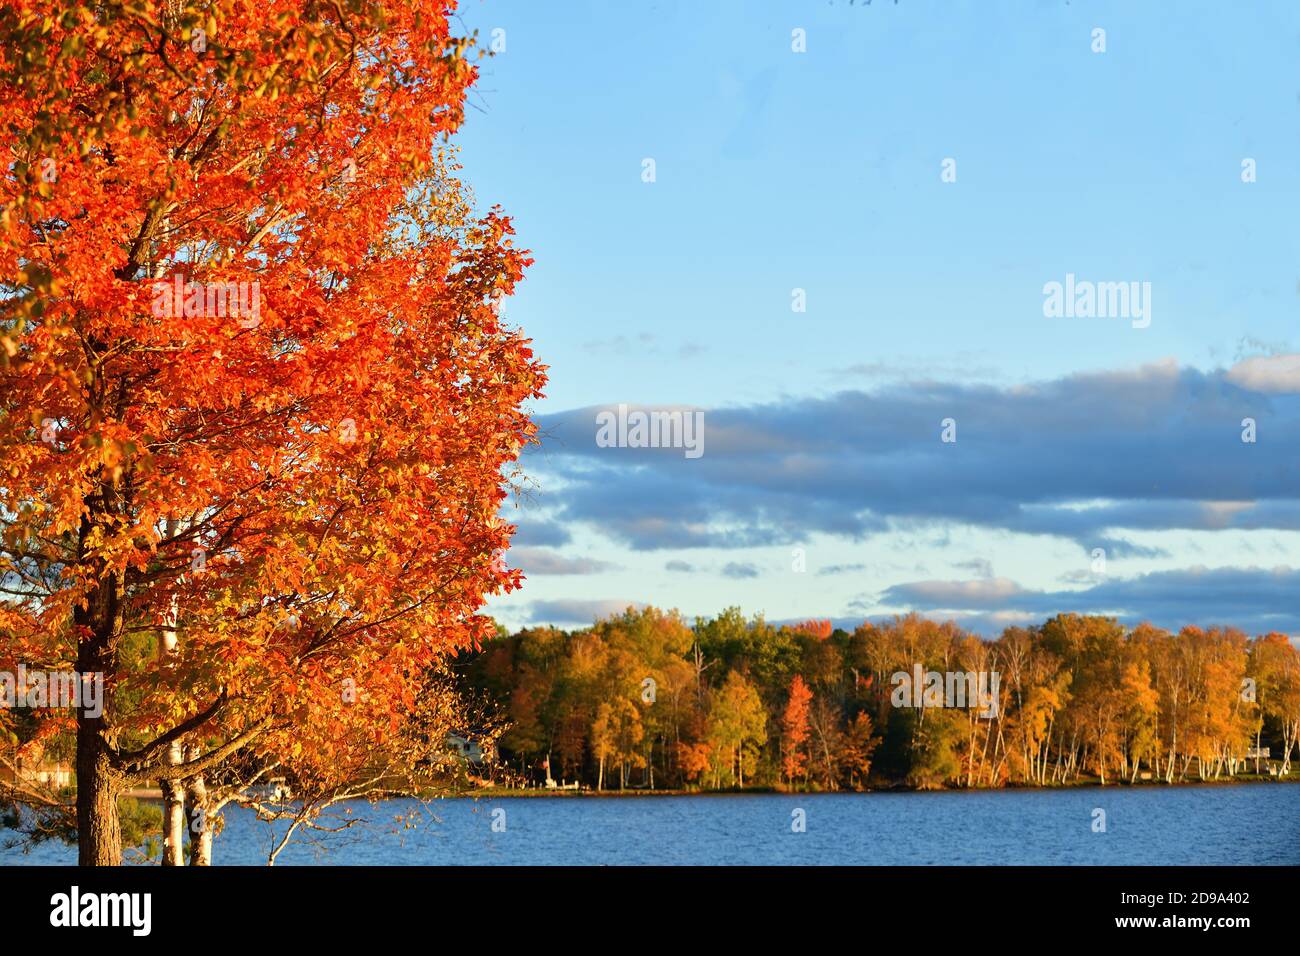 Forelle Lake, Michigan, USA. Der Herbst und die späte Nachmittagssonne steigen auf Bäumen entlang einer Küstenlinie am Trout Lake auf der Upper Peninsula von Michigan ab. Stockfoto